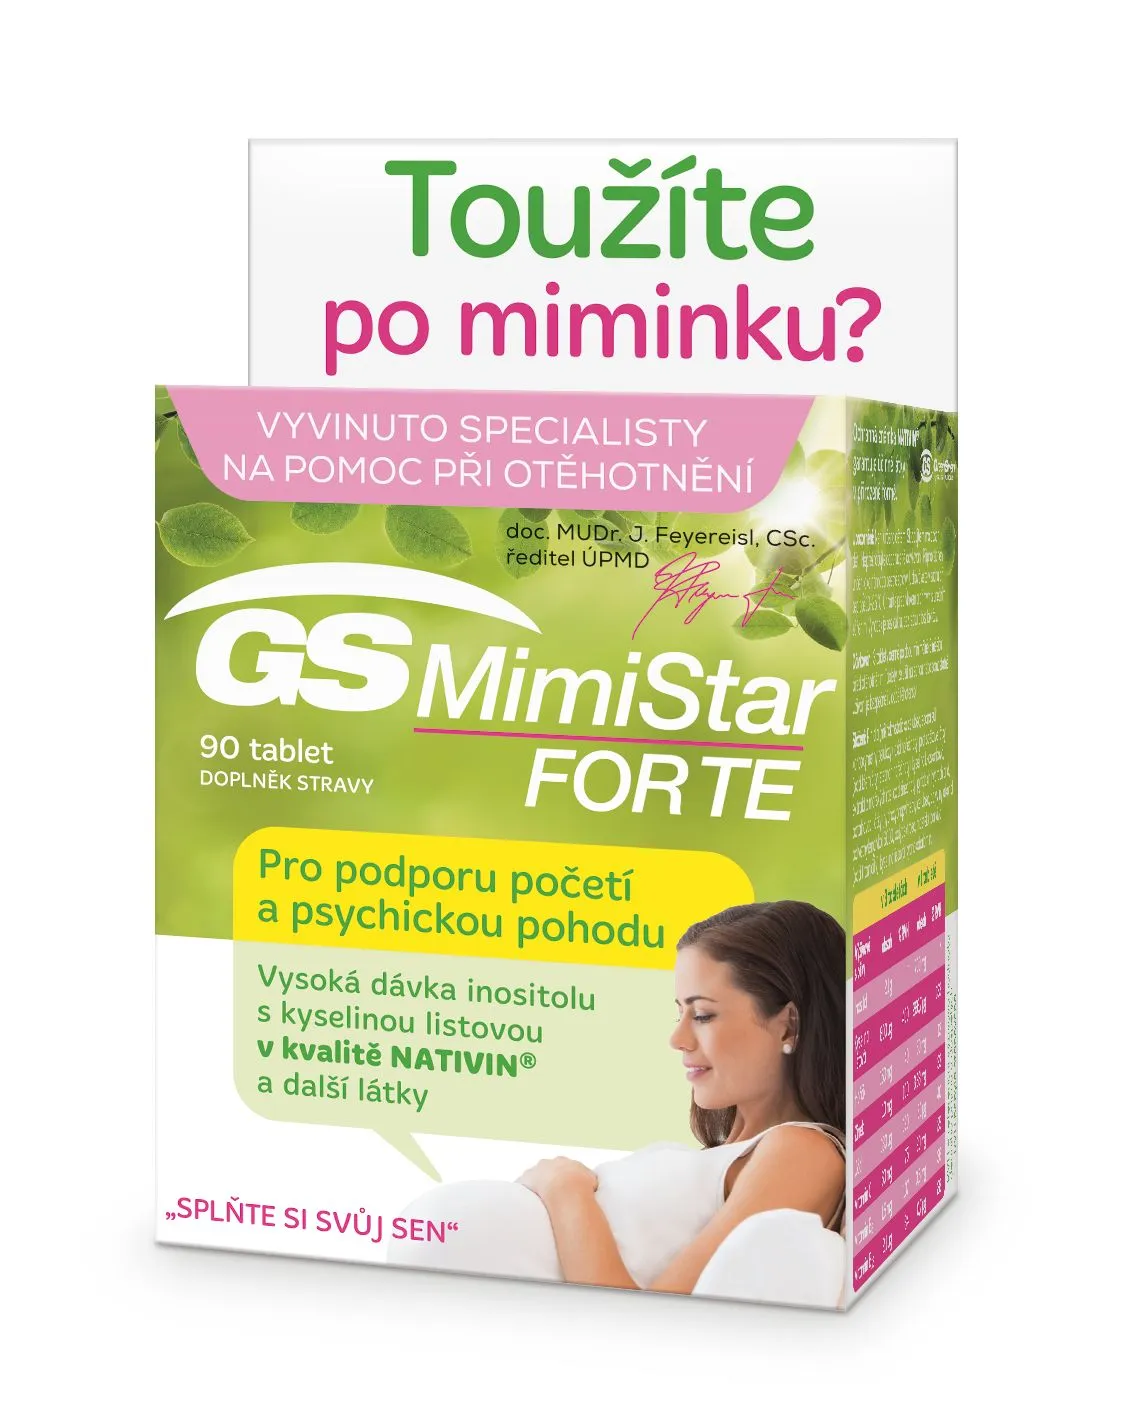 GS MimiStar Forte